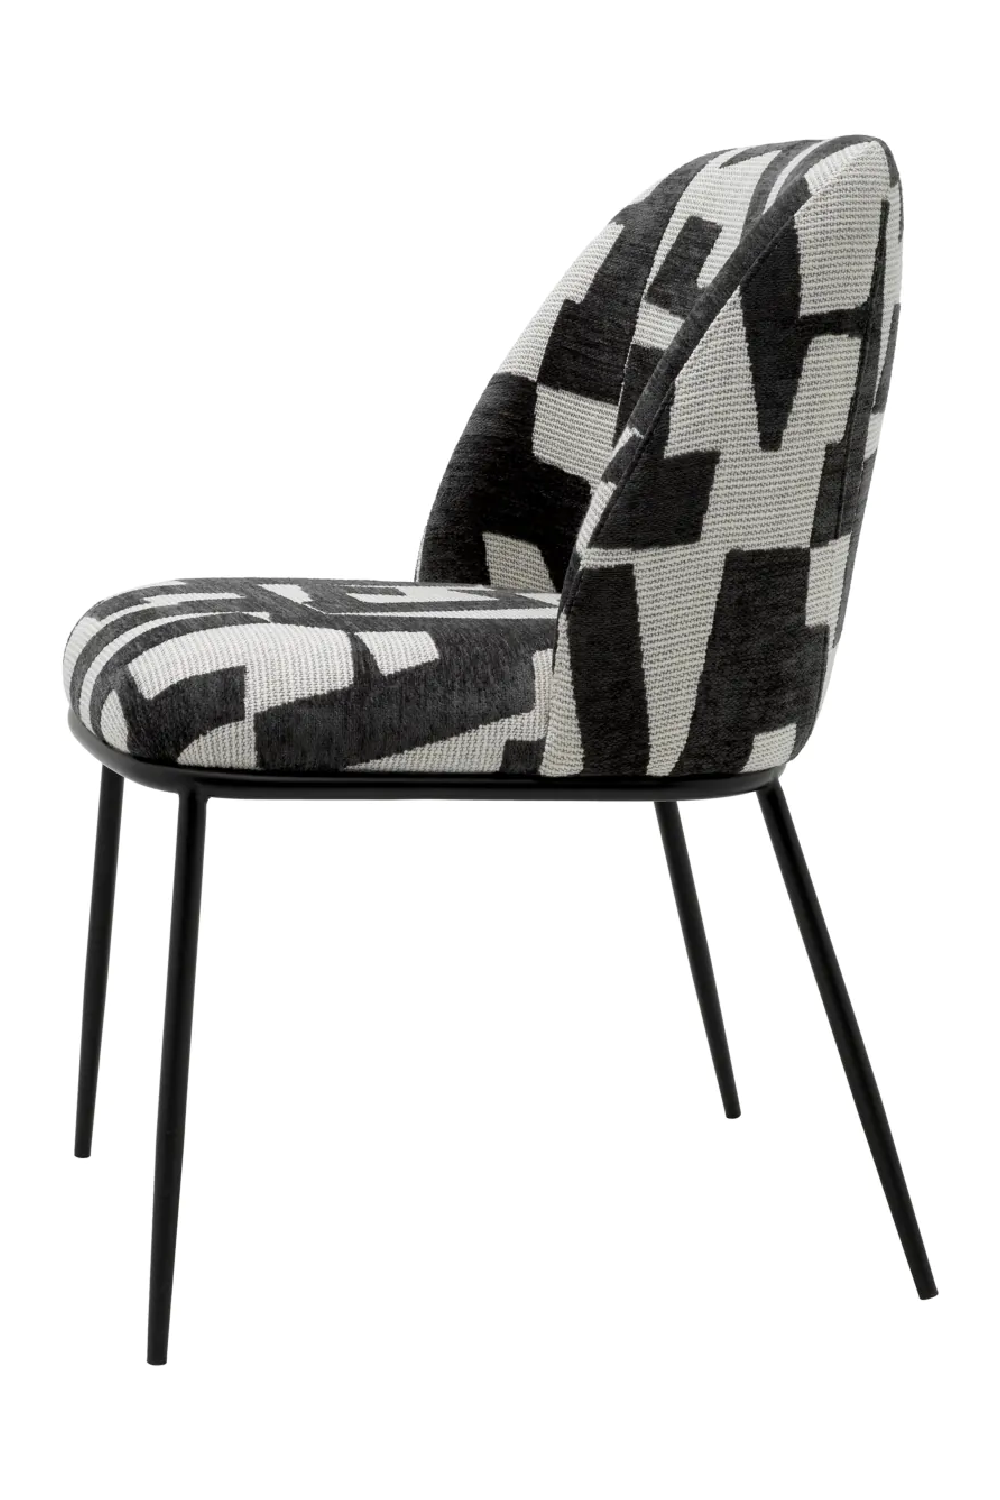 Printed Black Fabric Dining Chair | Eichholtz Caleb | Oroa.com